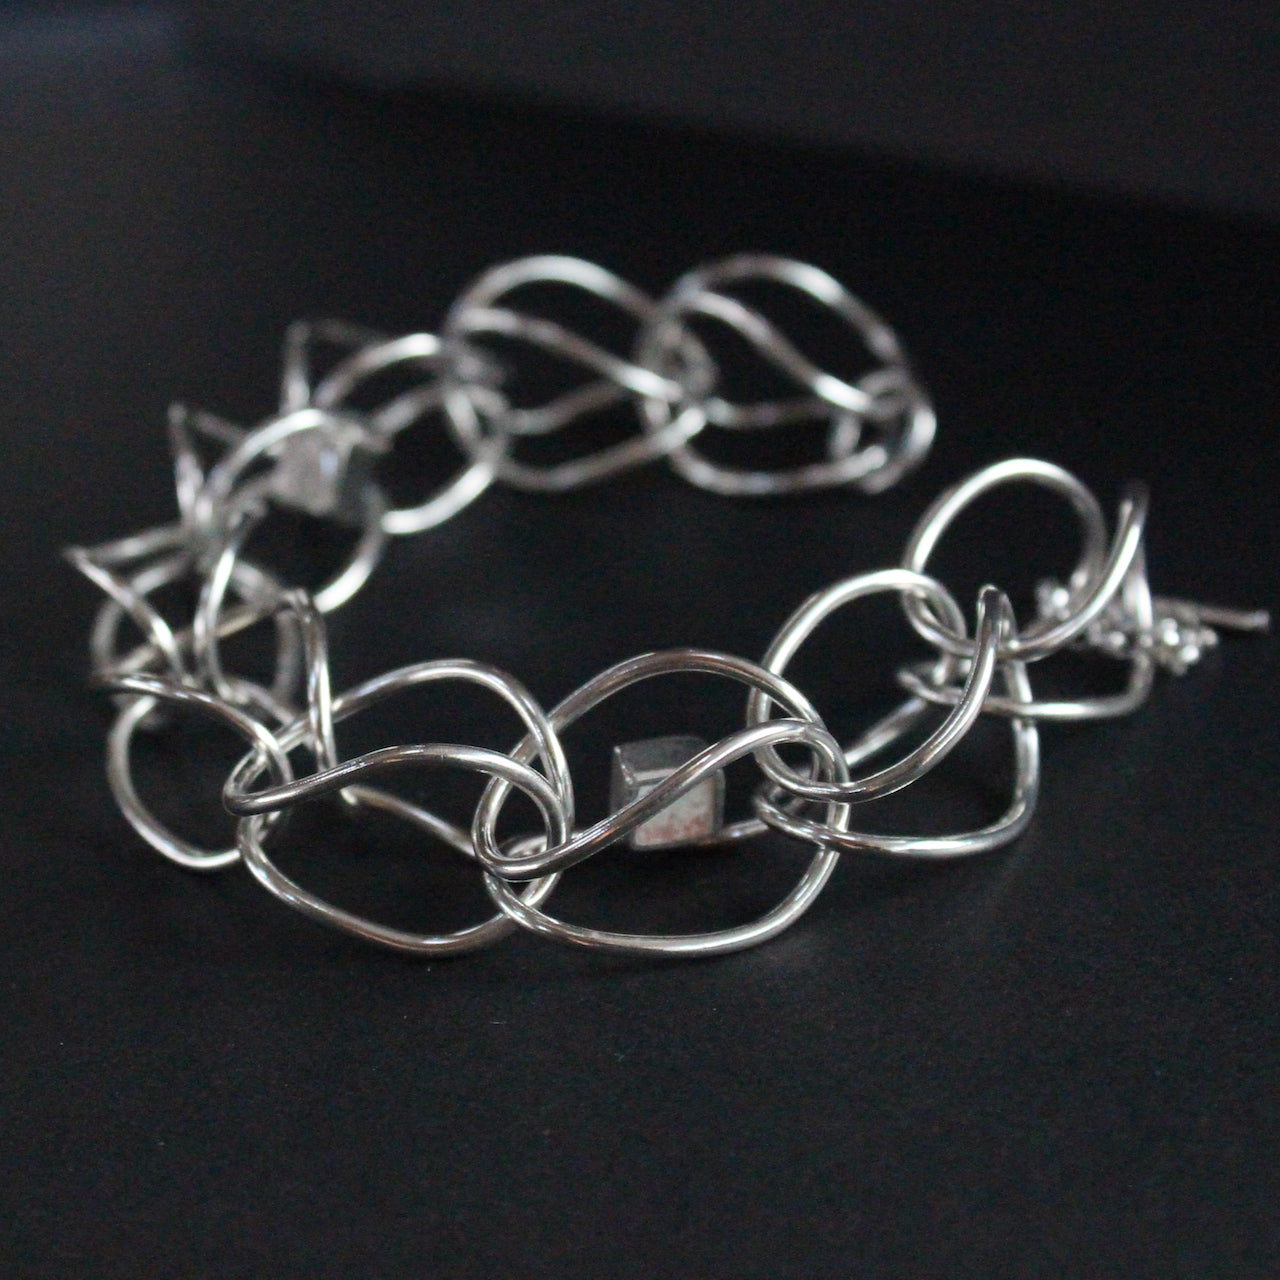 Sterling silver loop in loop chain bracelet by artist Amy Stringer.